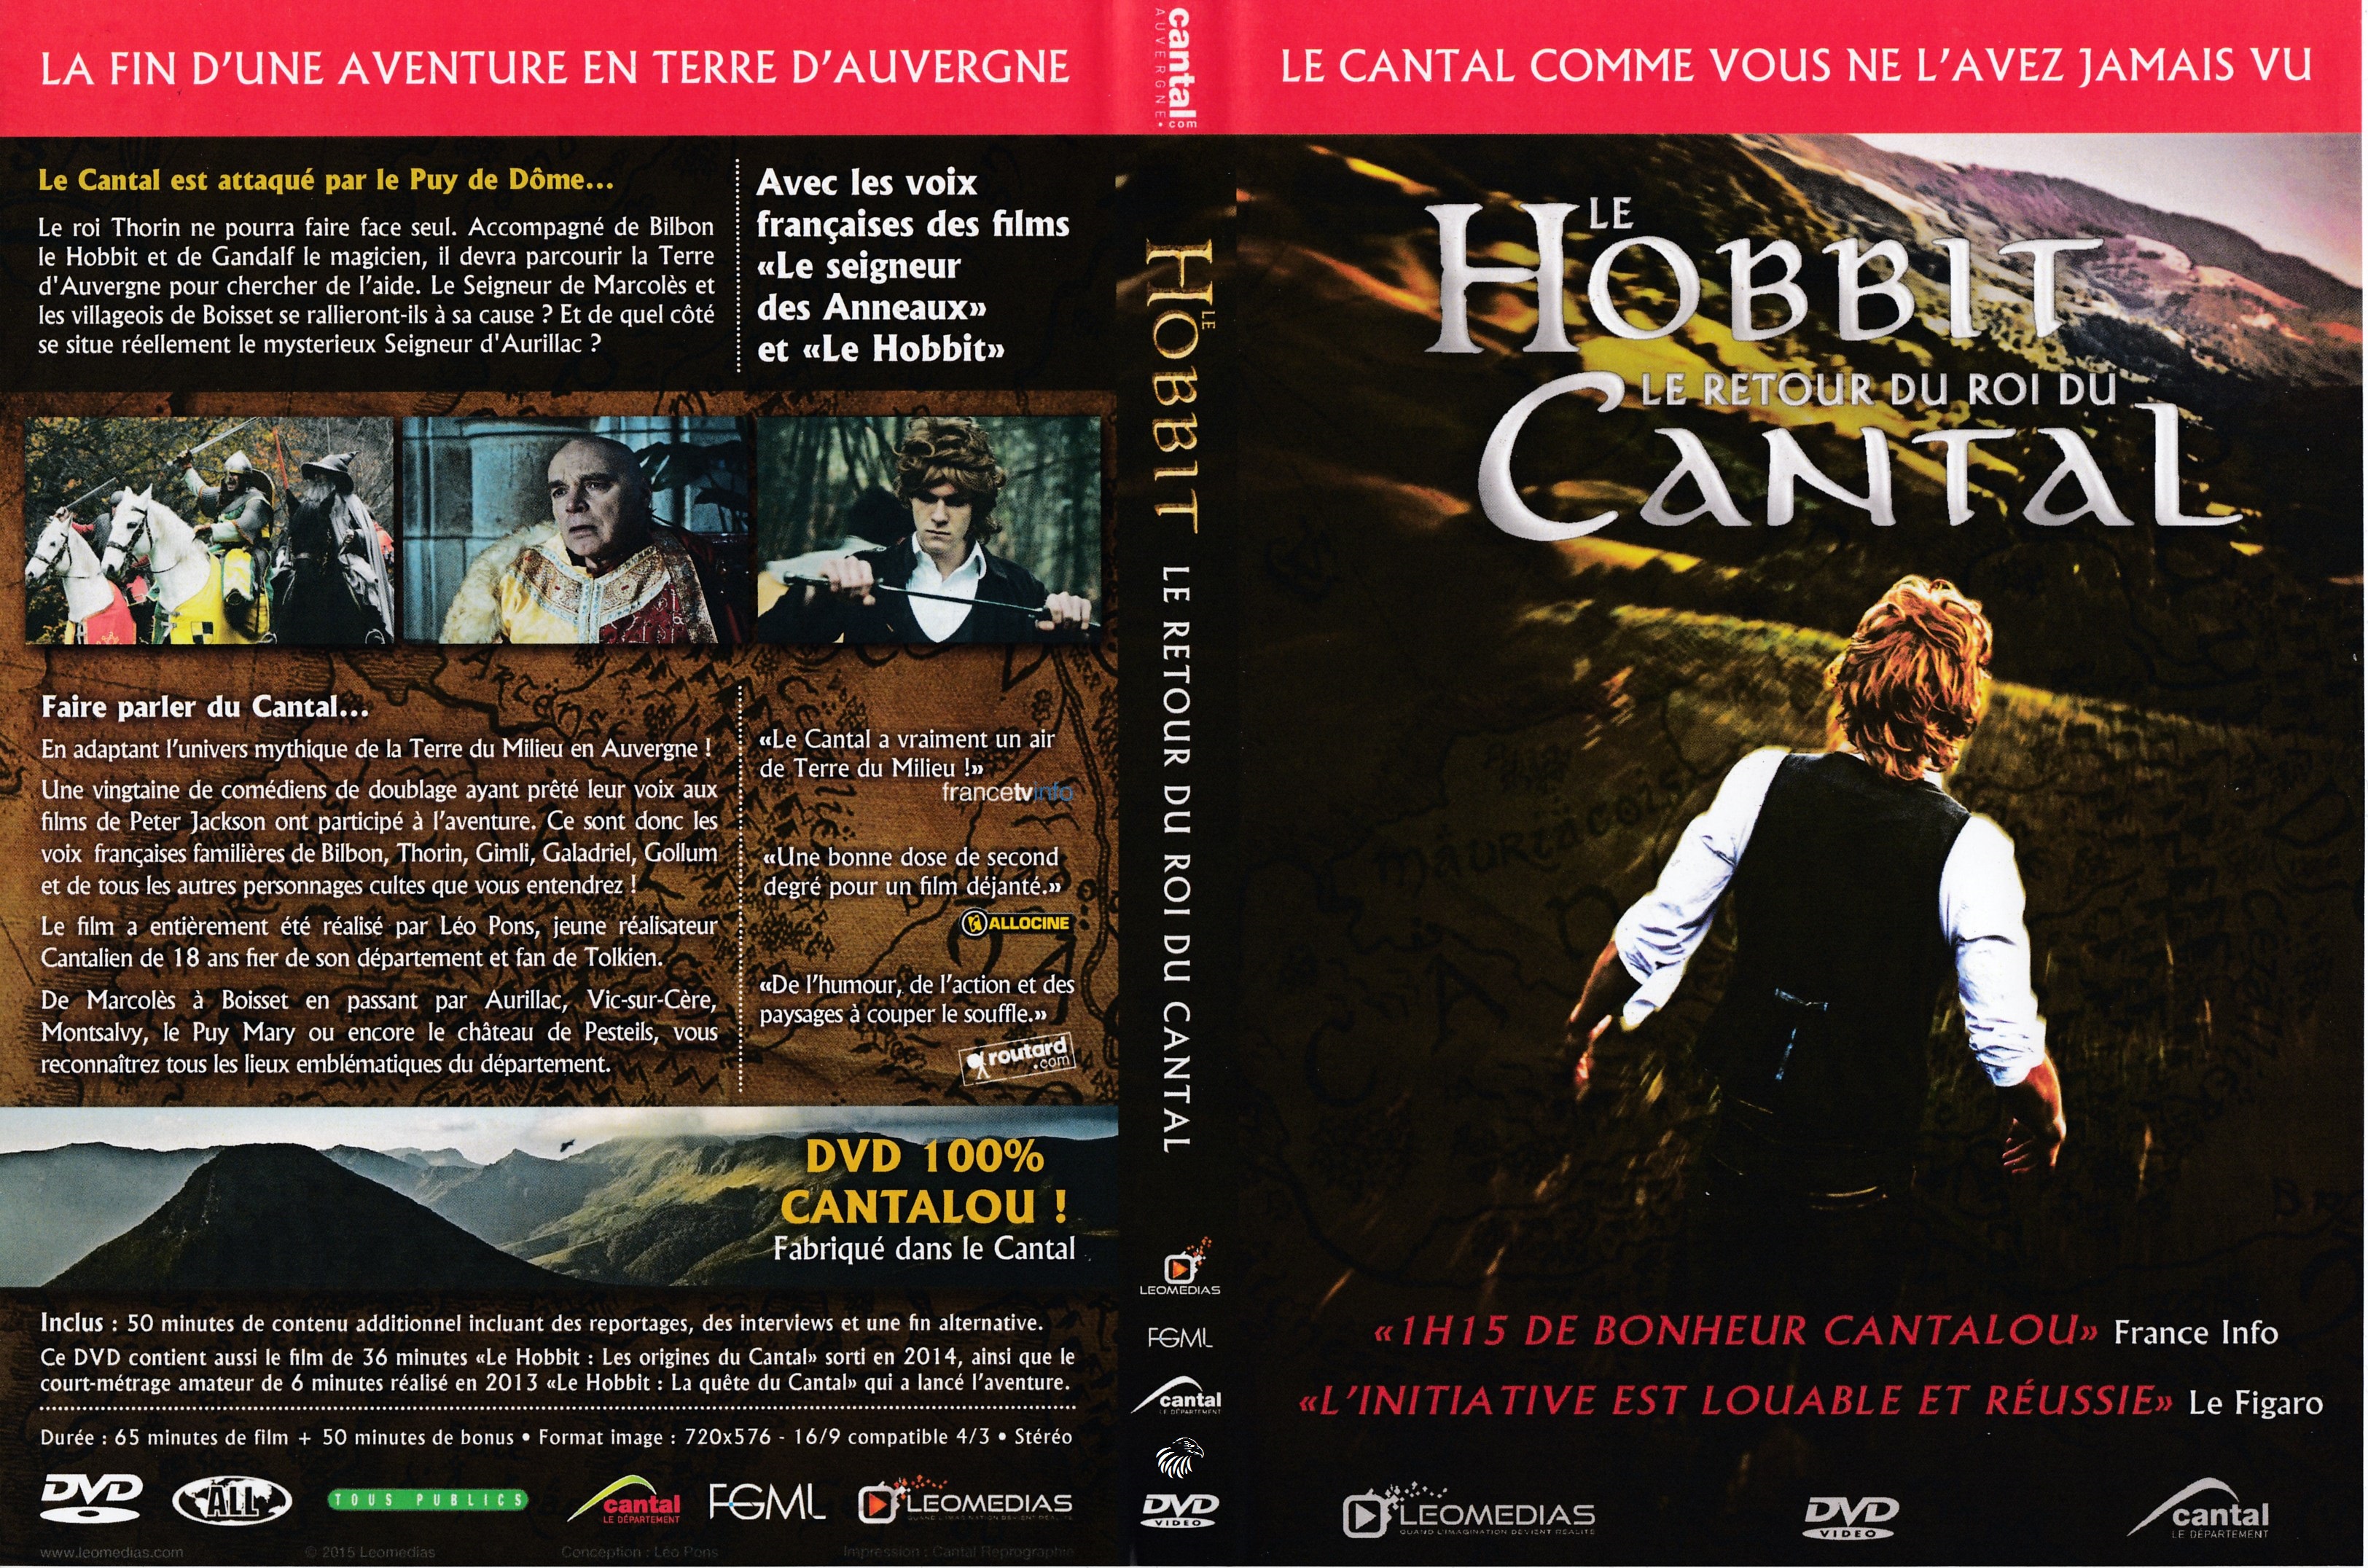 Jaquette DVD Le hobbit le retour du roi du cantal